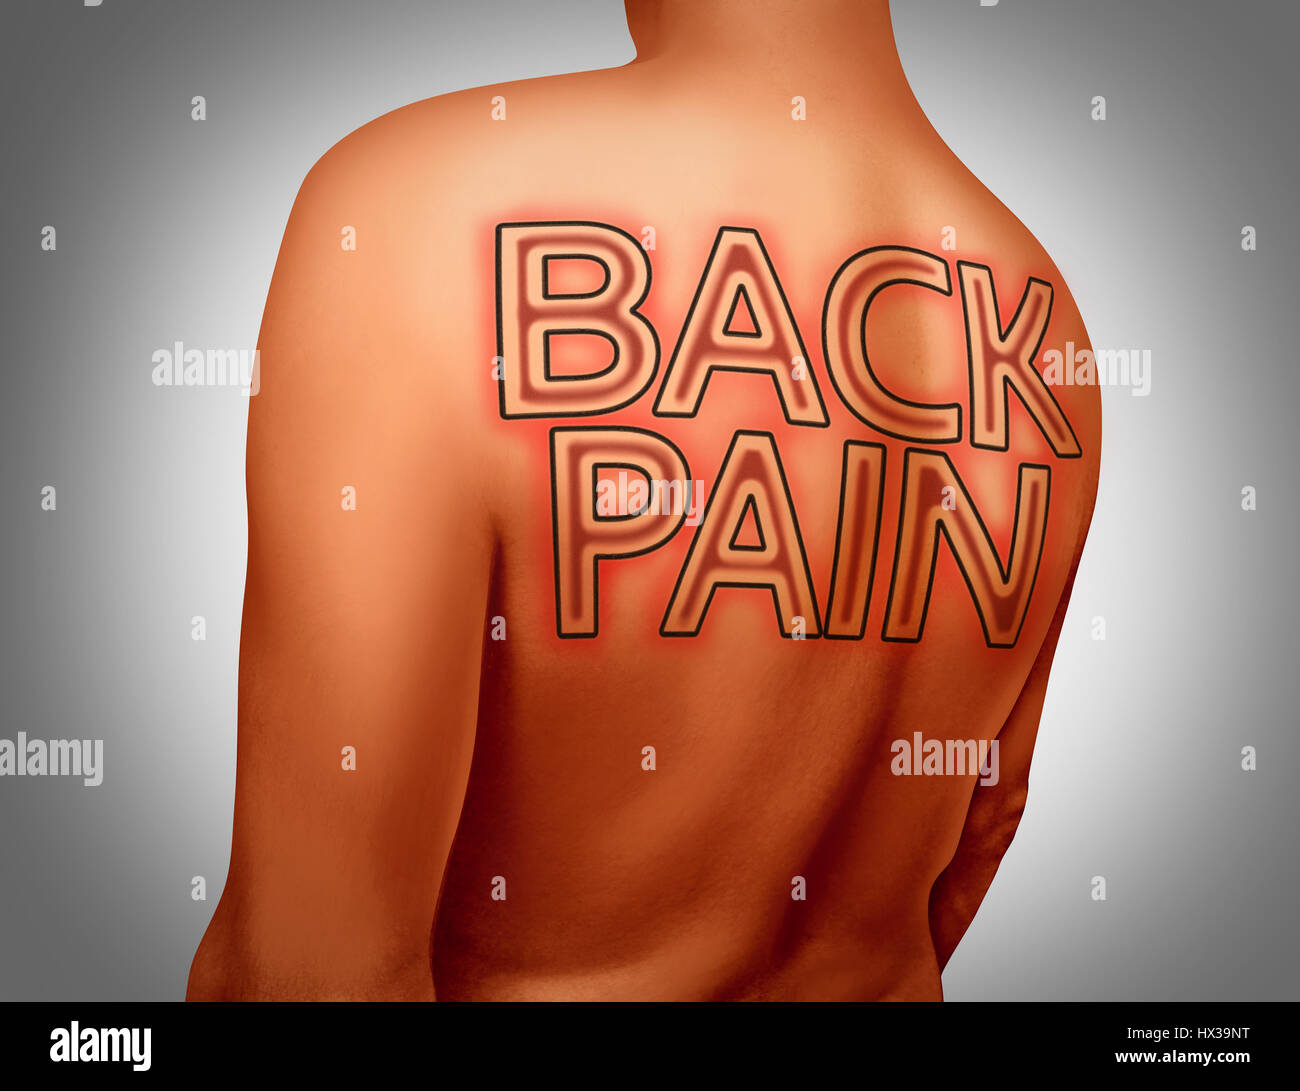 Schmerzen medizinisches Konzept als Text-Tattoo-Kunst auf der menschlichen Haut als muskuläre Gesundheit oder als Skelett Schmerz oder Wirbelsäule Verletzungen mit 3D Abbildung Elemente zurück. Stockfoto